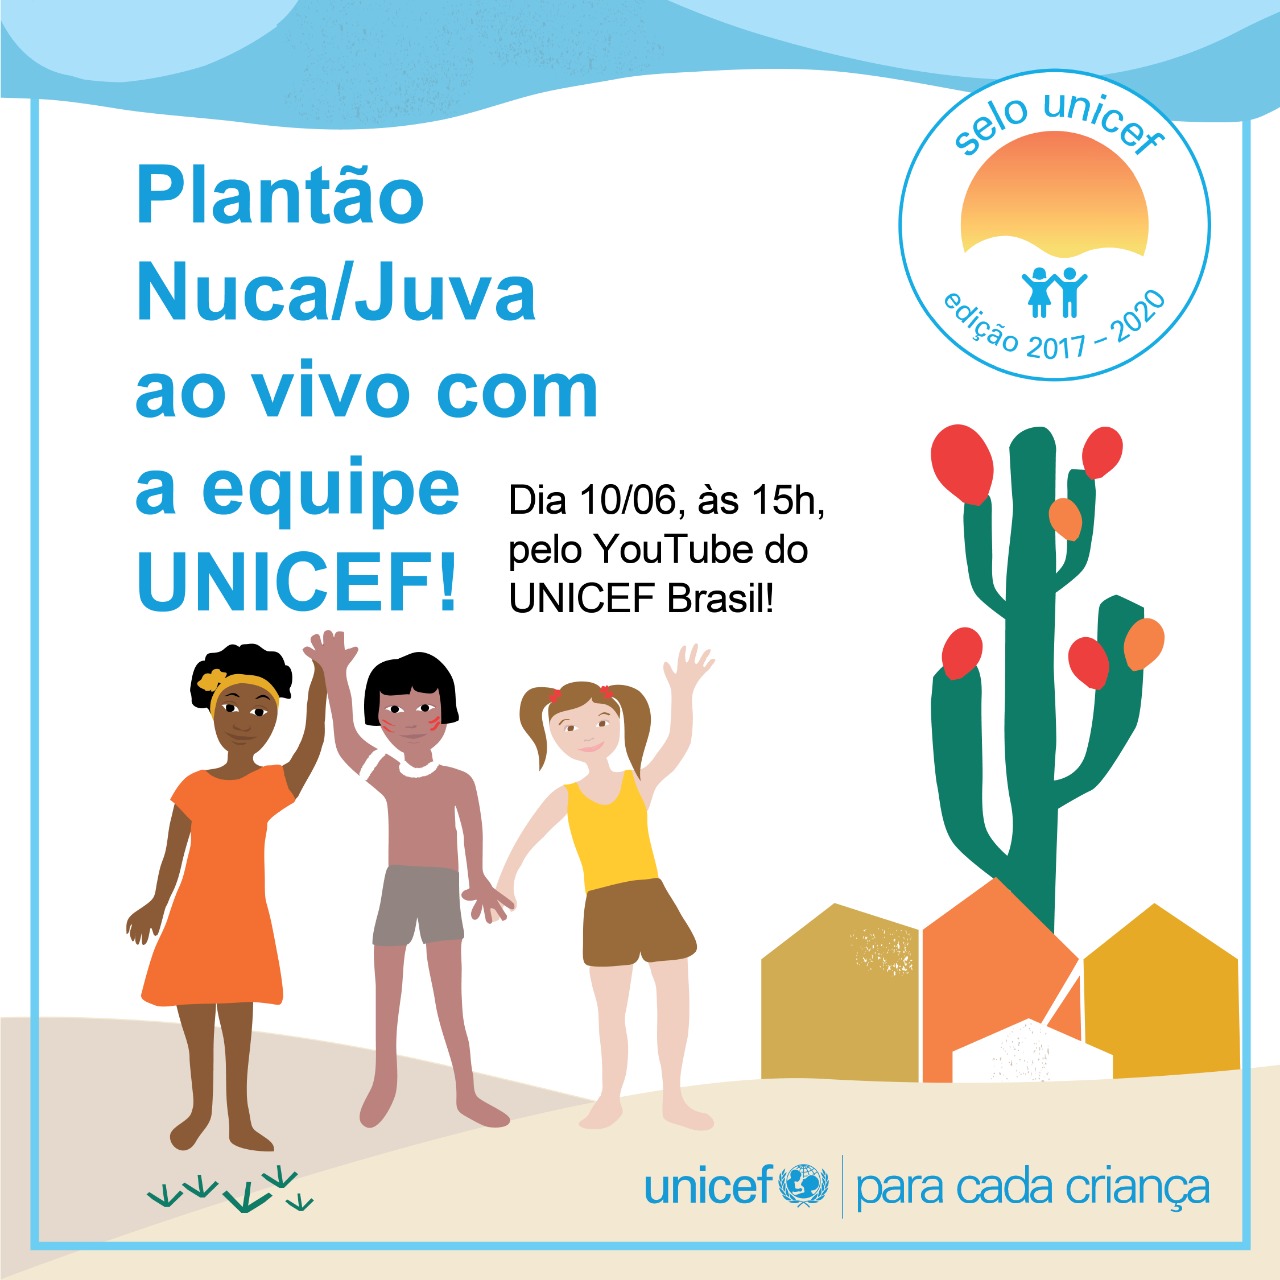 #1 Plantão NUCA - Como ajudar seu município a conquistar o Selo UNICEF